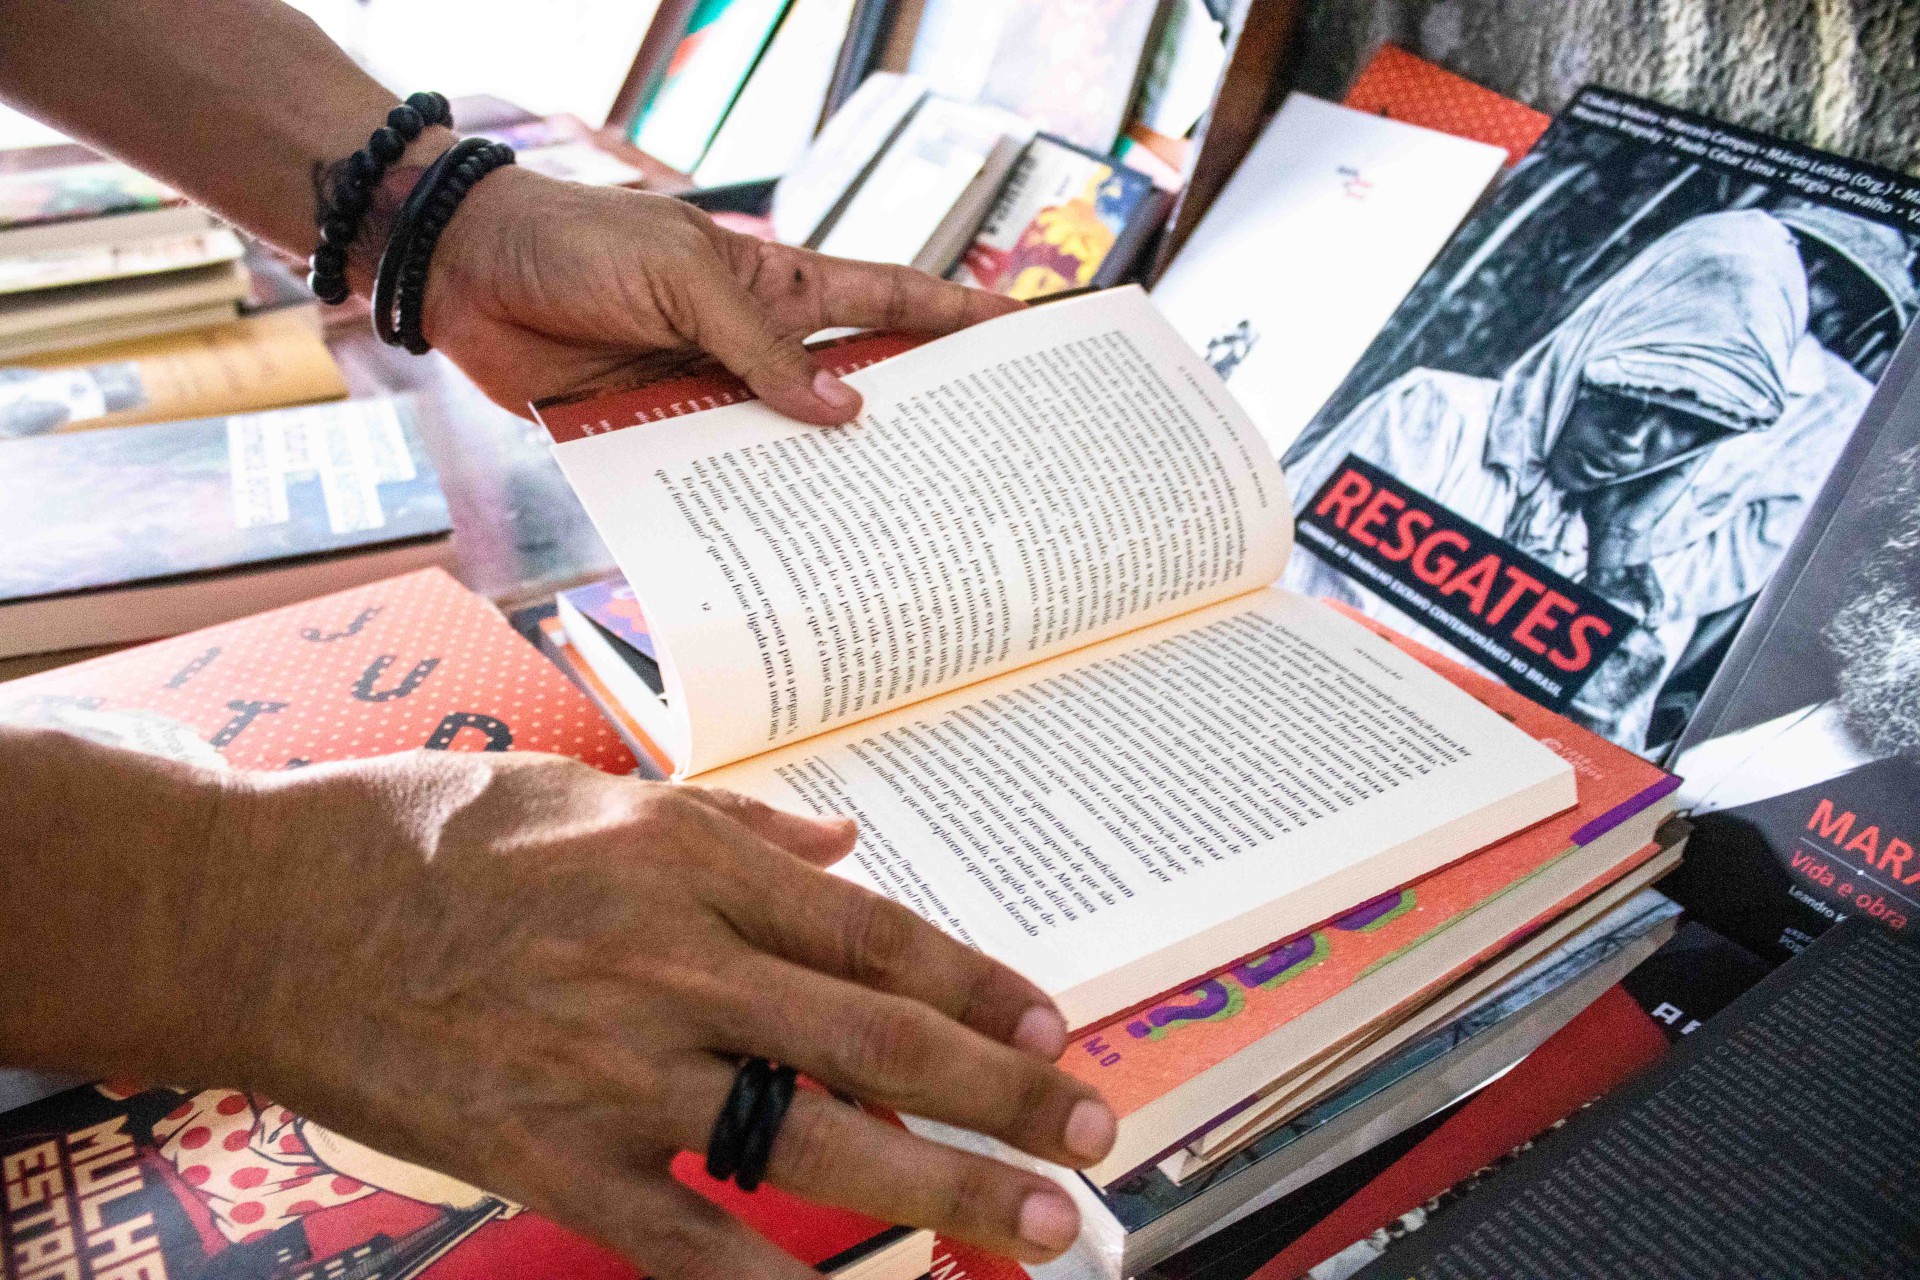 Autores cearenses buscam expandir oportunidades dentro da cena literária  (Foto: FERNANDA BARROS)